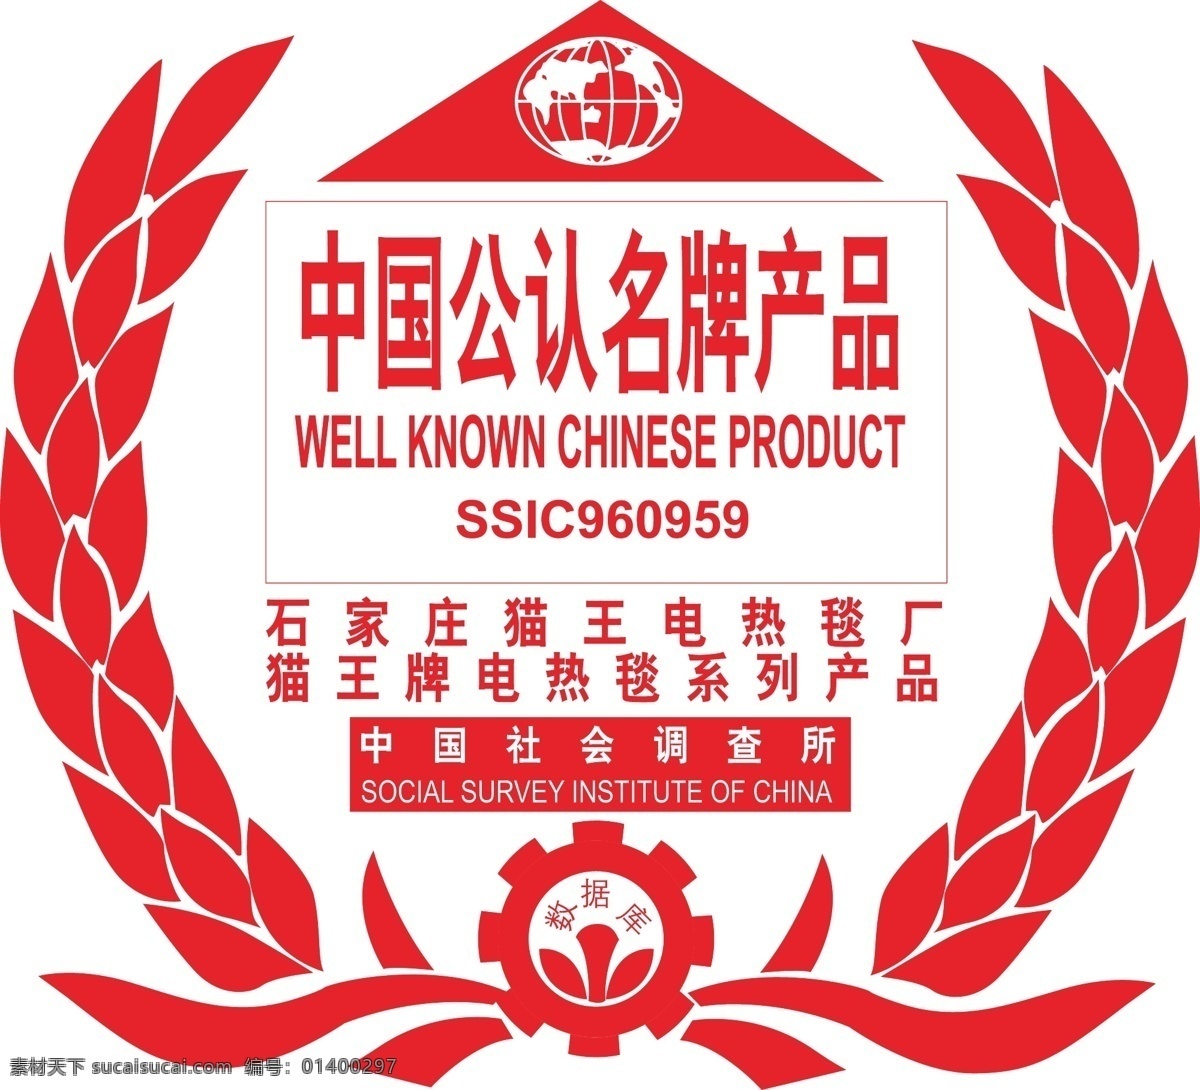 中国 公认 名牌 产品 公共标识标志 标识标志图标 矢量